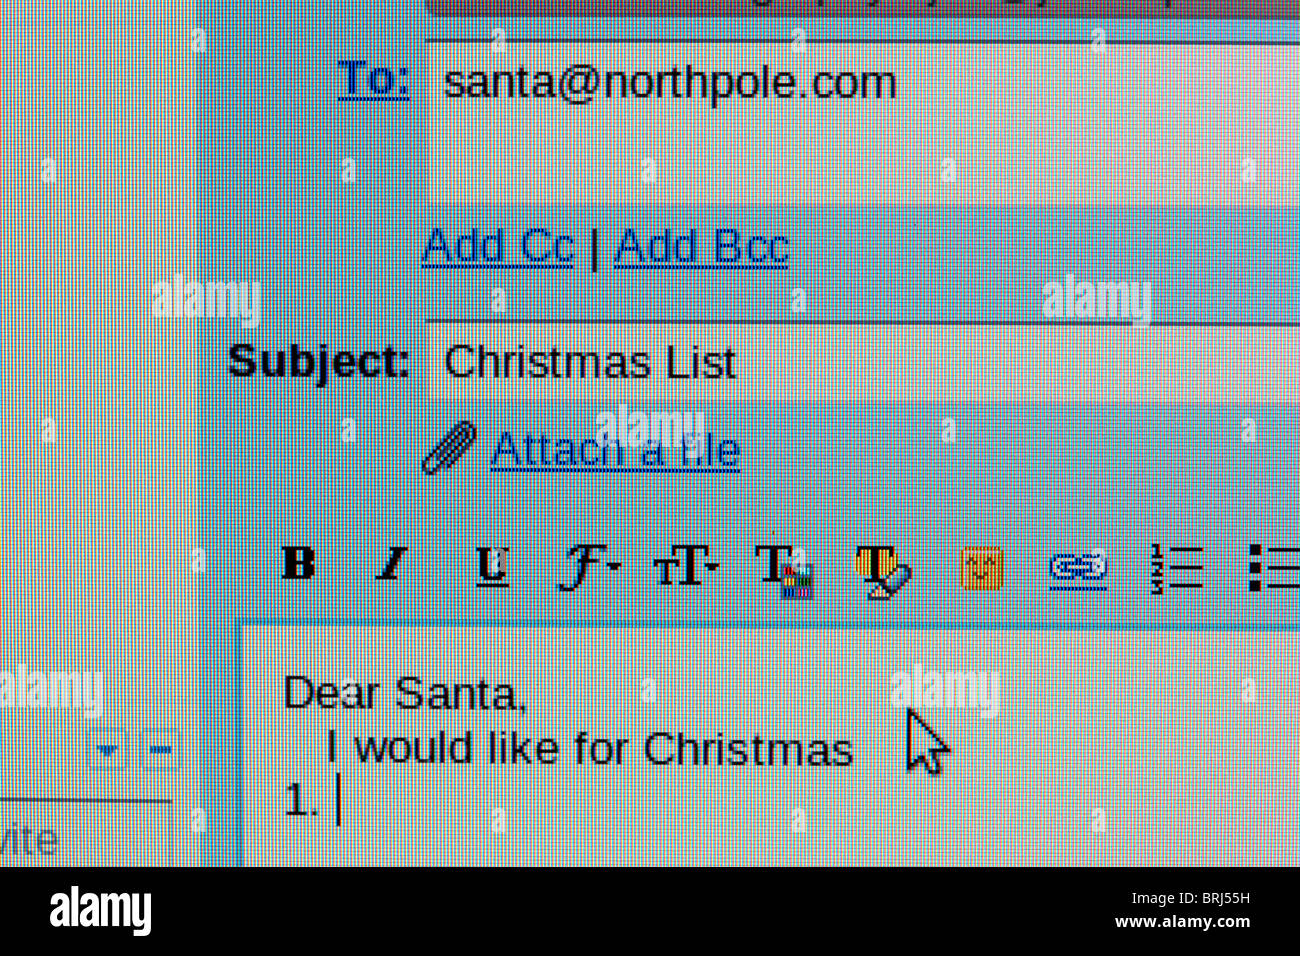 Capture d'écran d'un e-mail à santa avec une liste de souhaits de Noël Banque D'Images